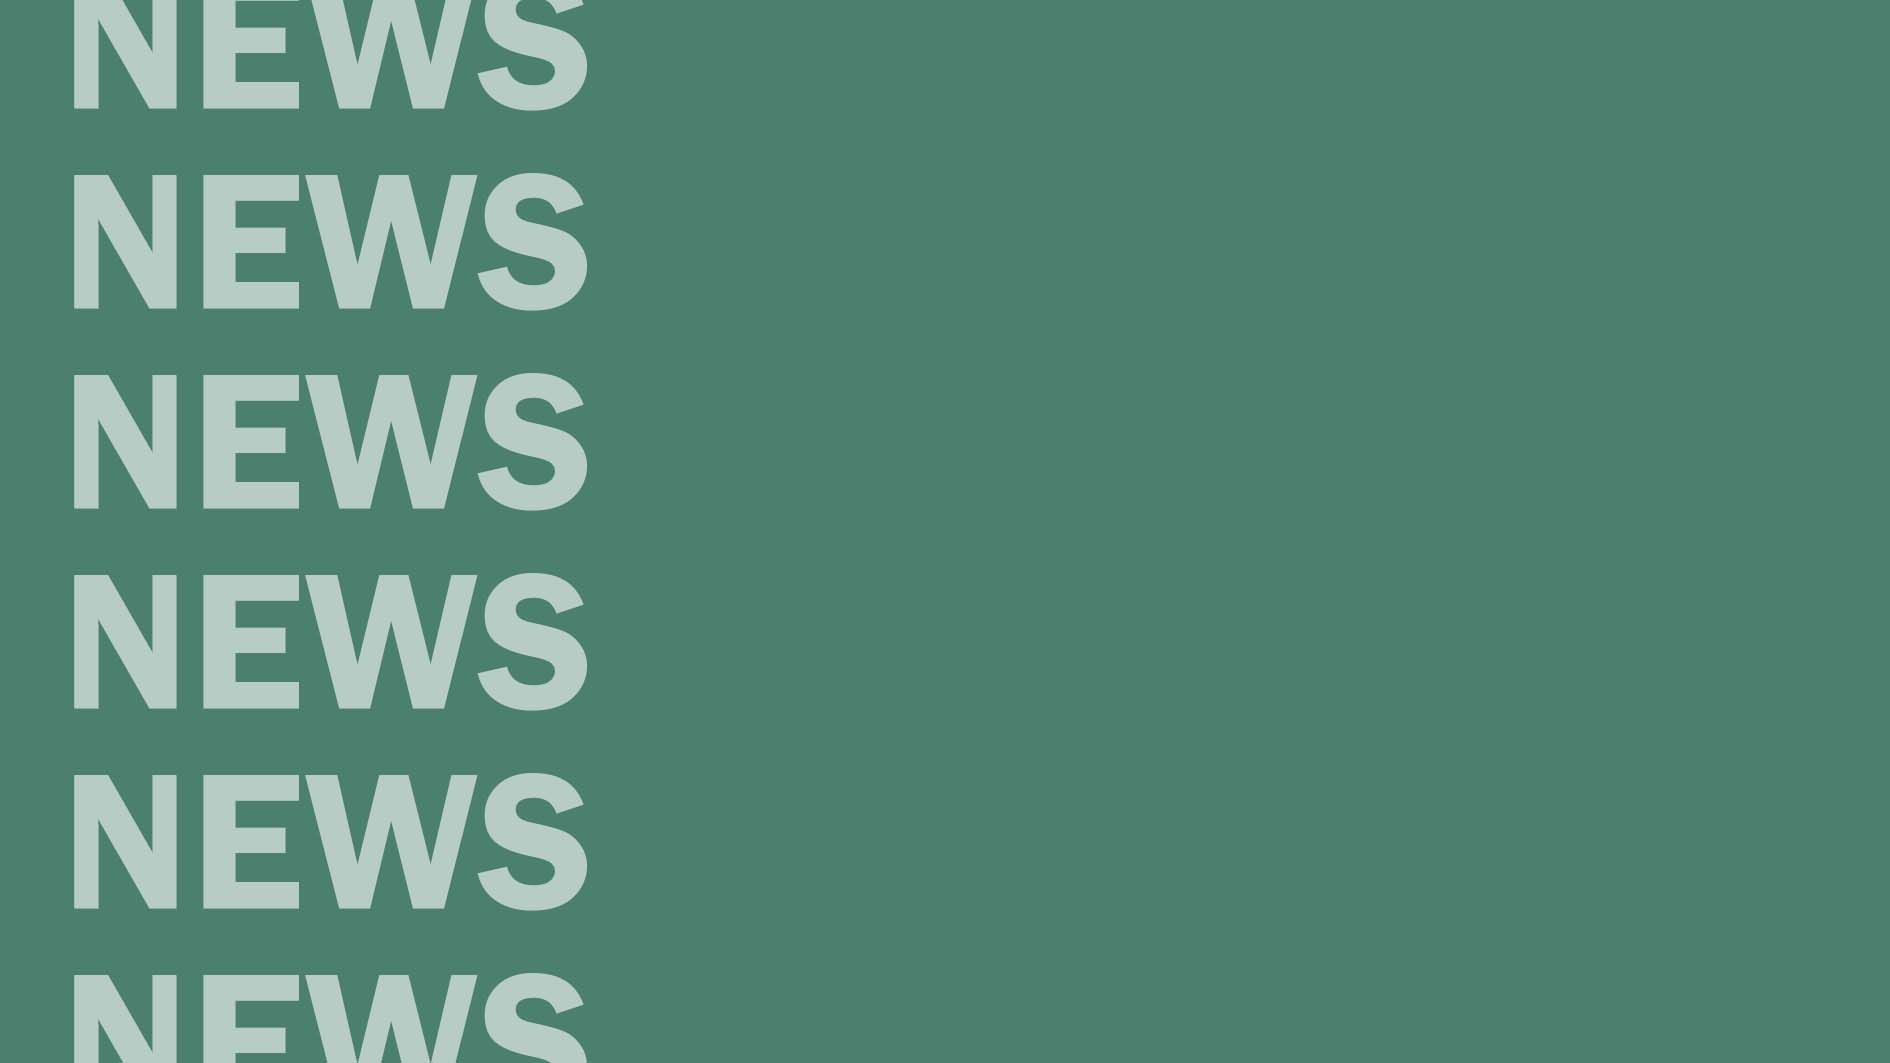 Grüner Hintergrund mit NEWS-Schriftzug